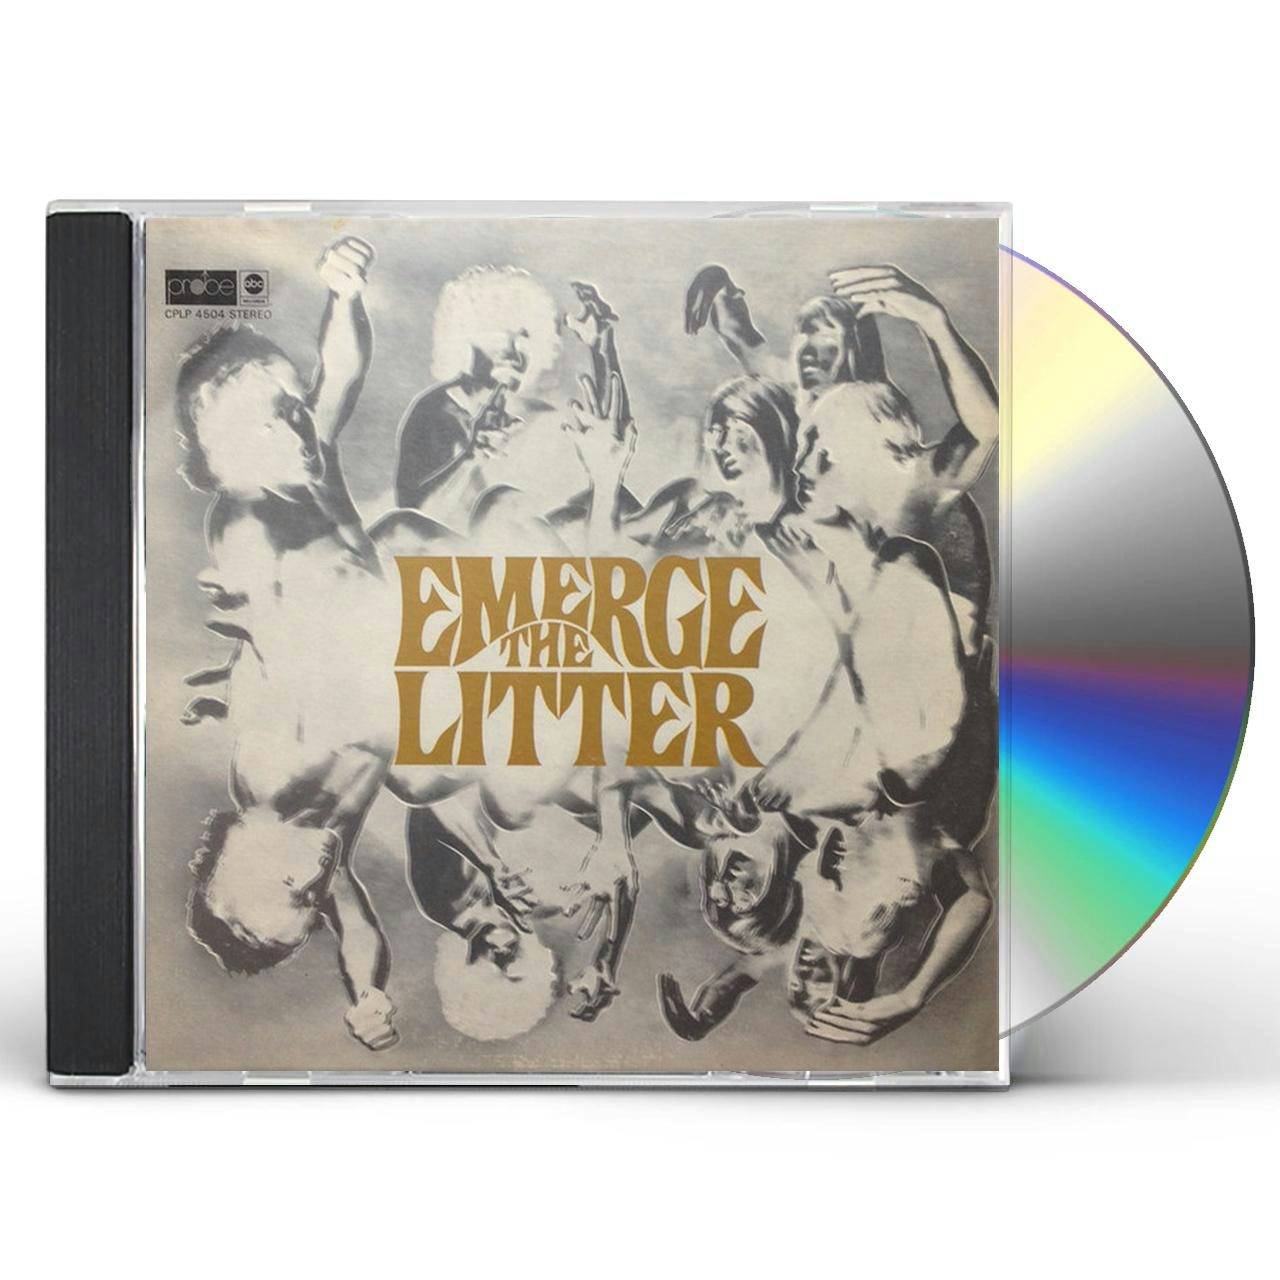 The Litter EMERGE CD